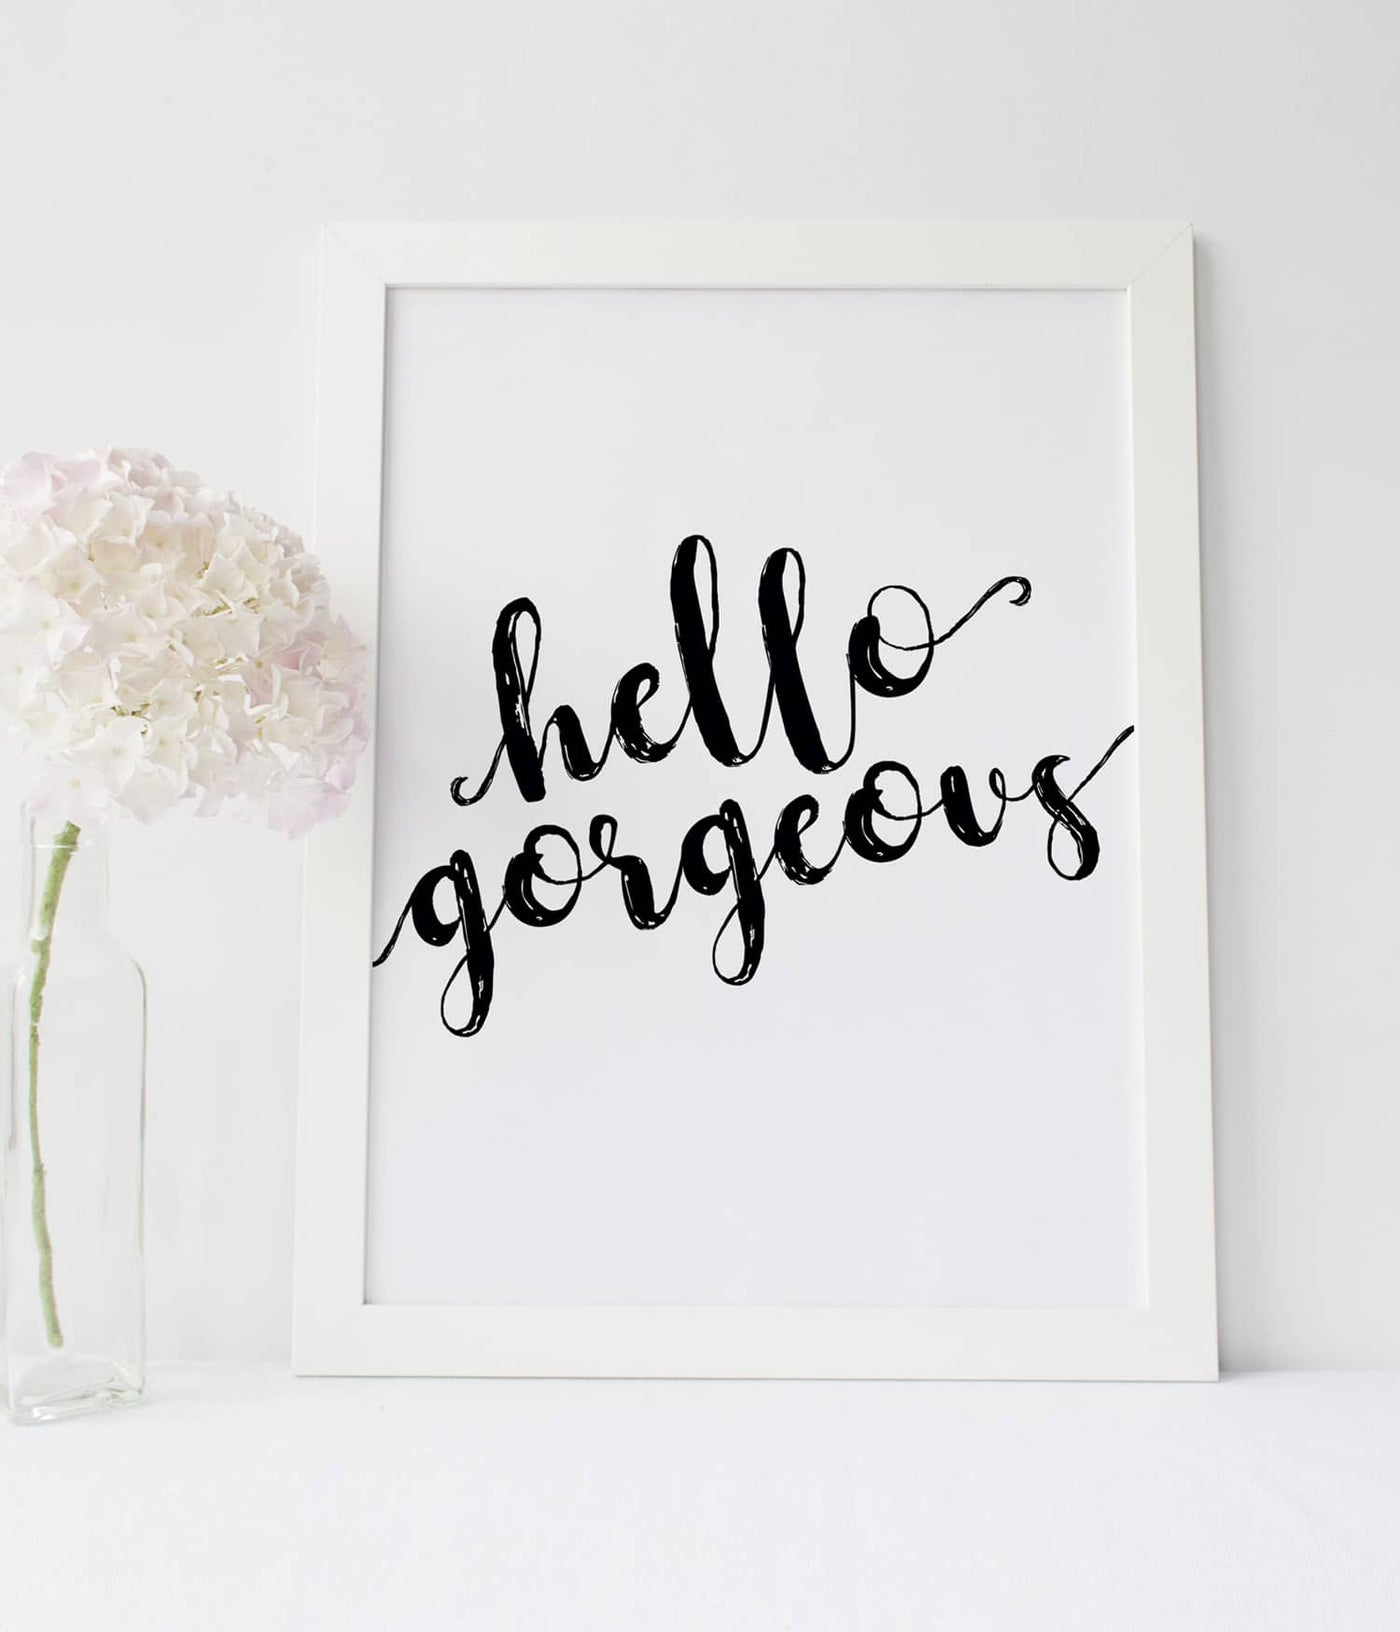 'Hello Gorgeous' Print